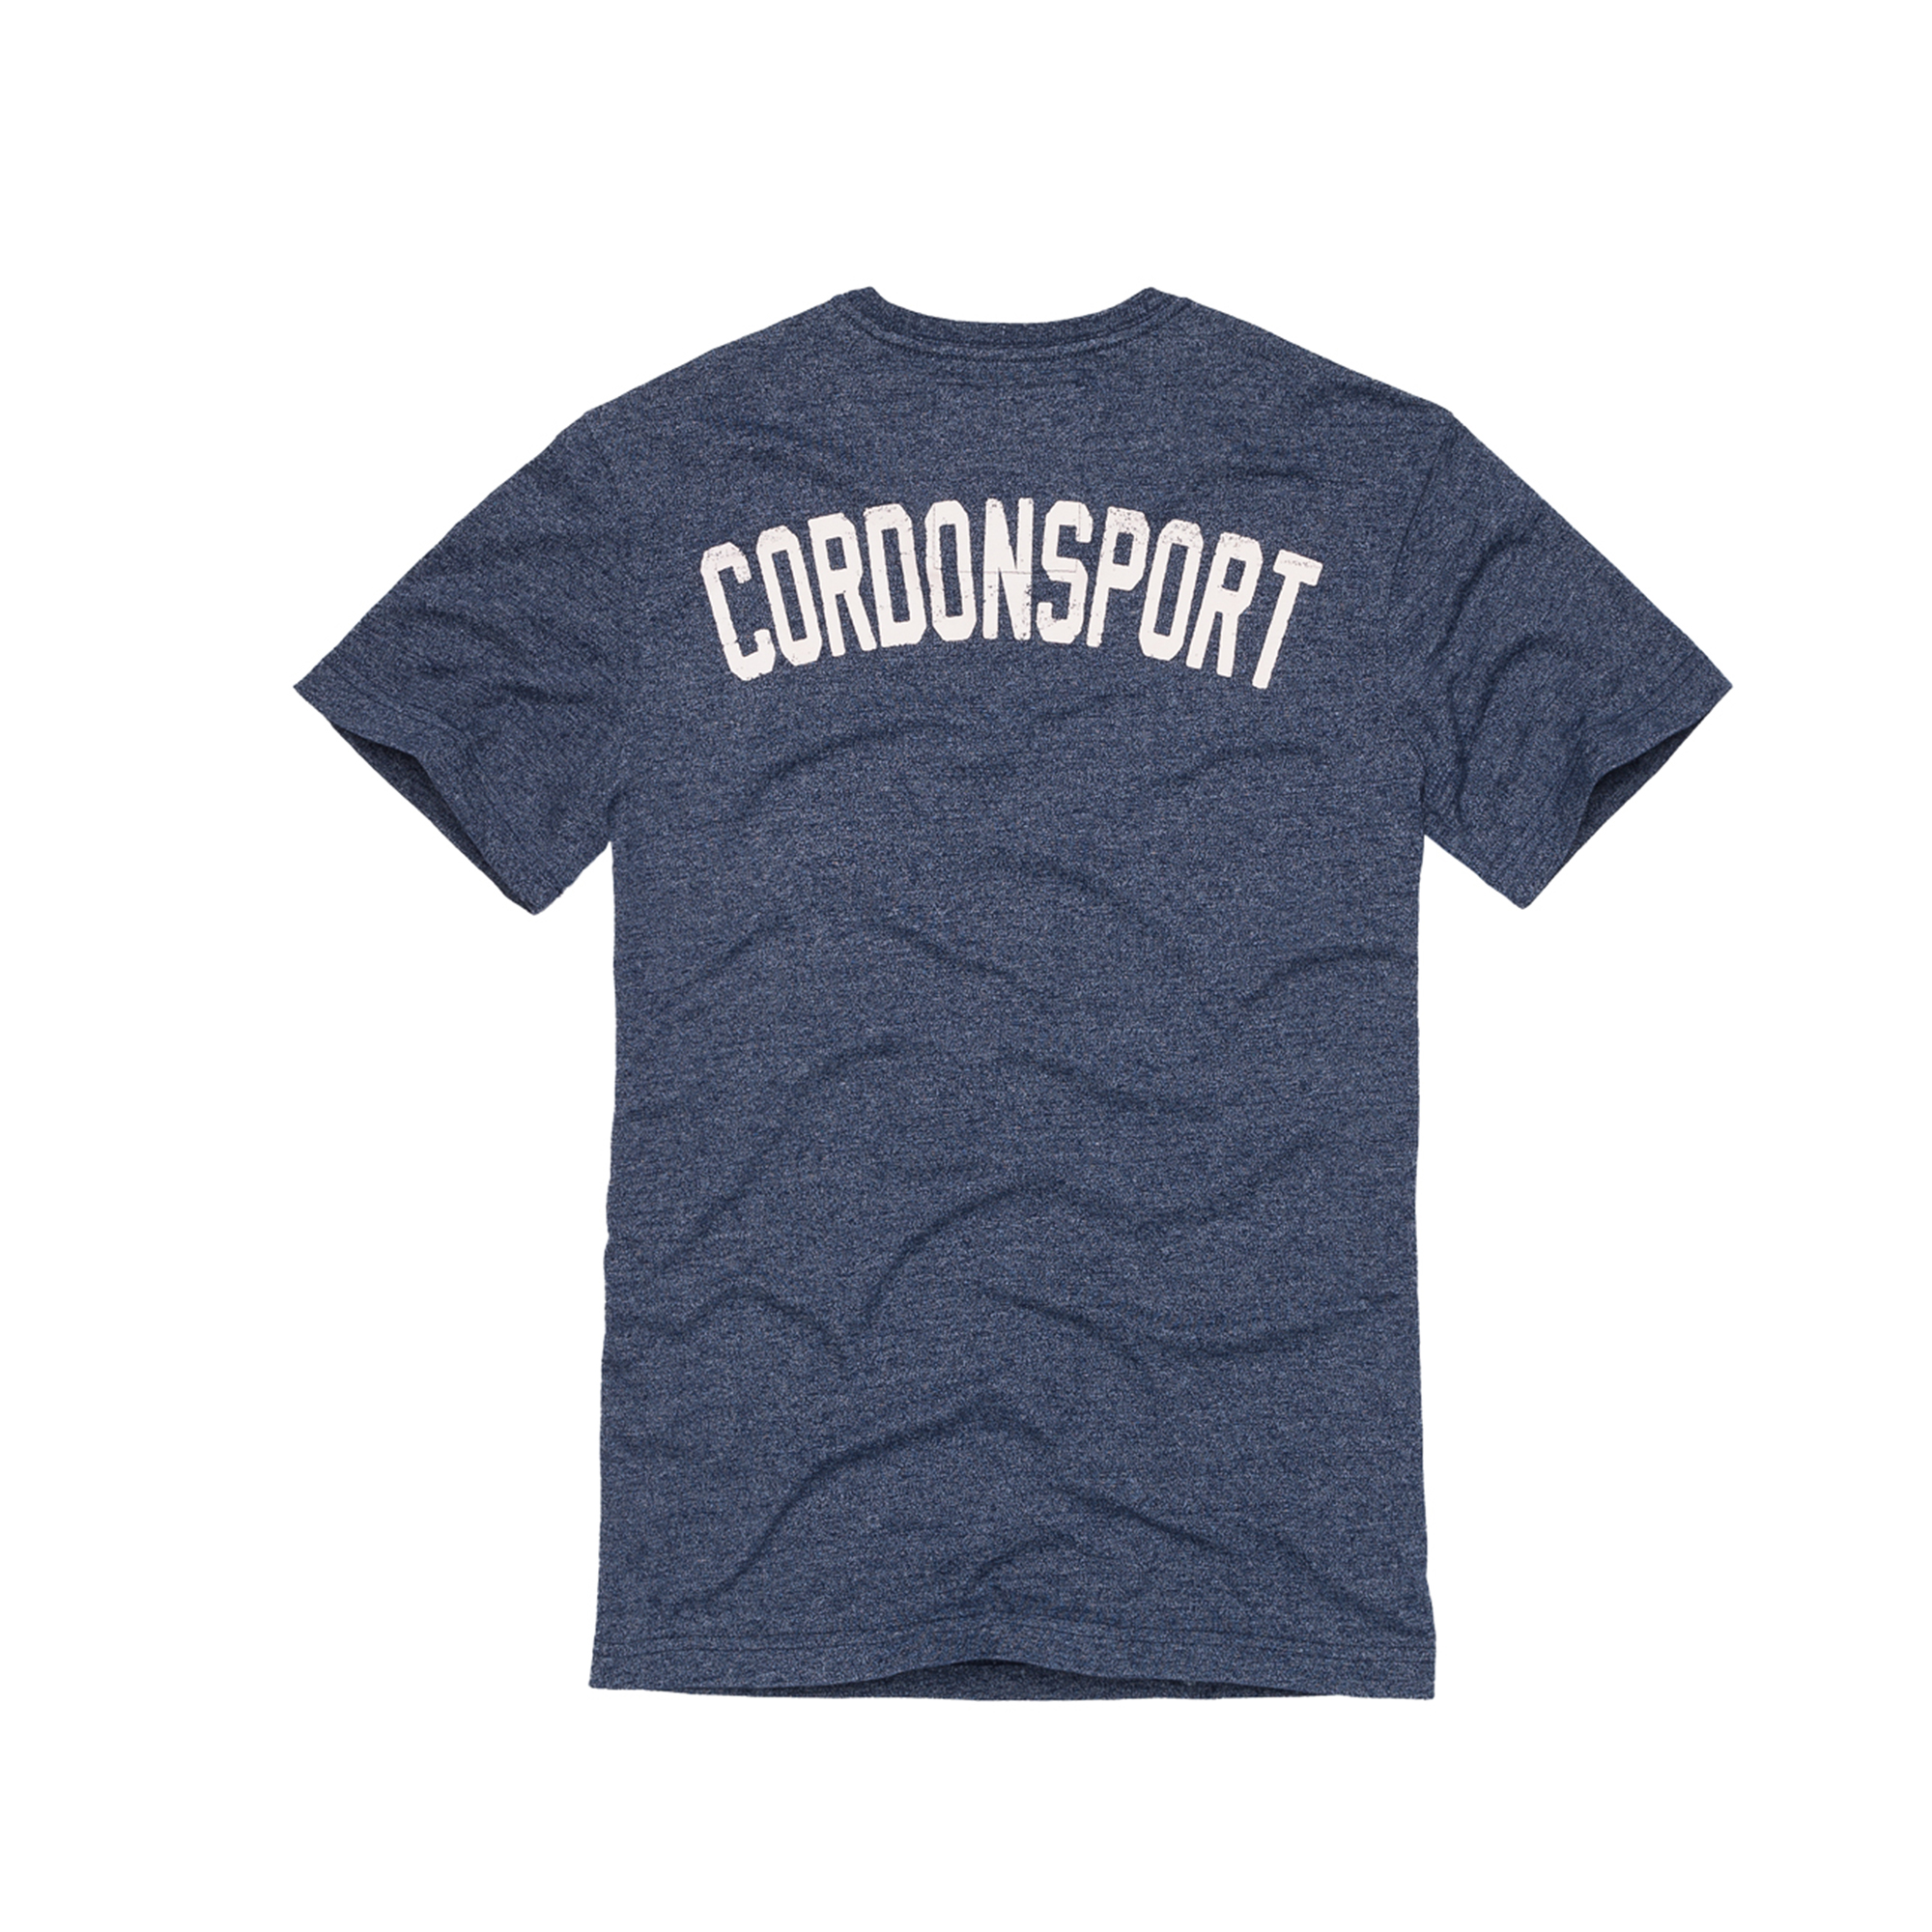 Cordon T Shirt Sioux